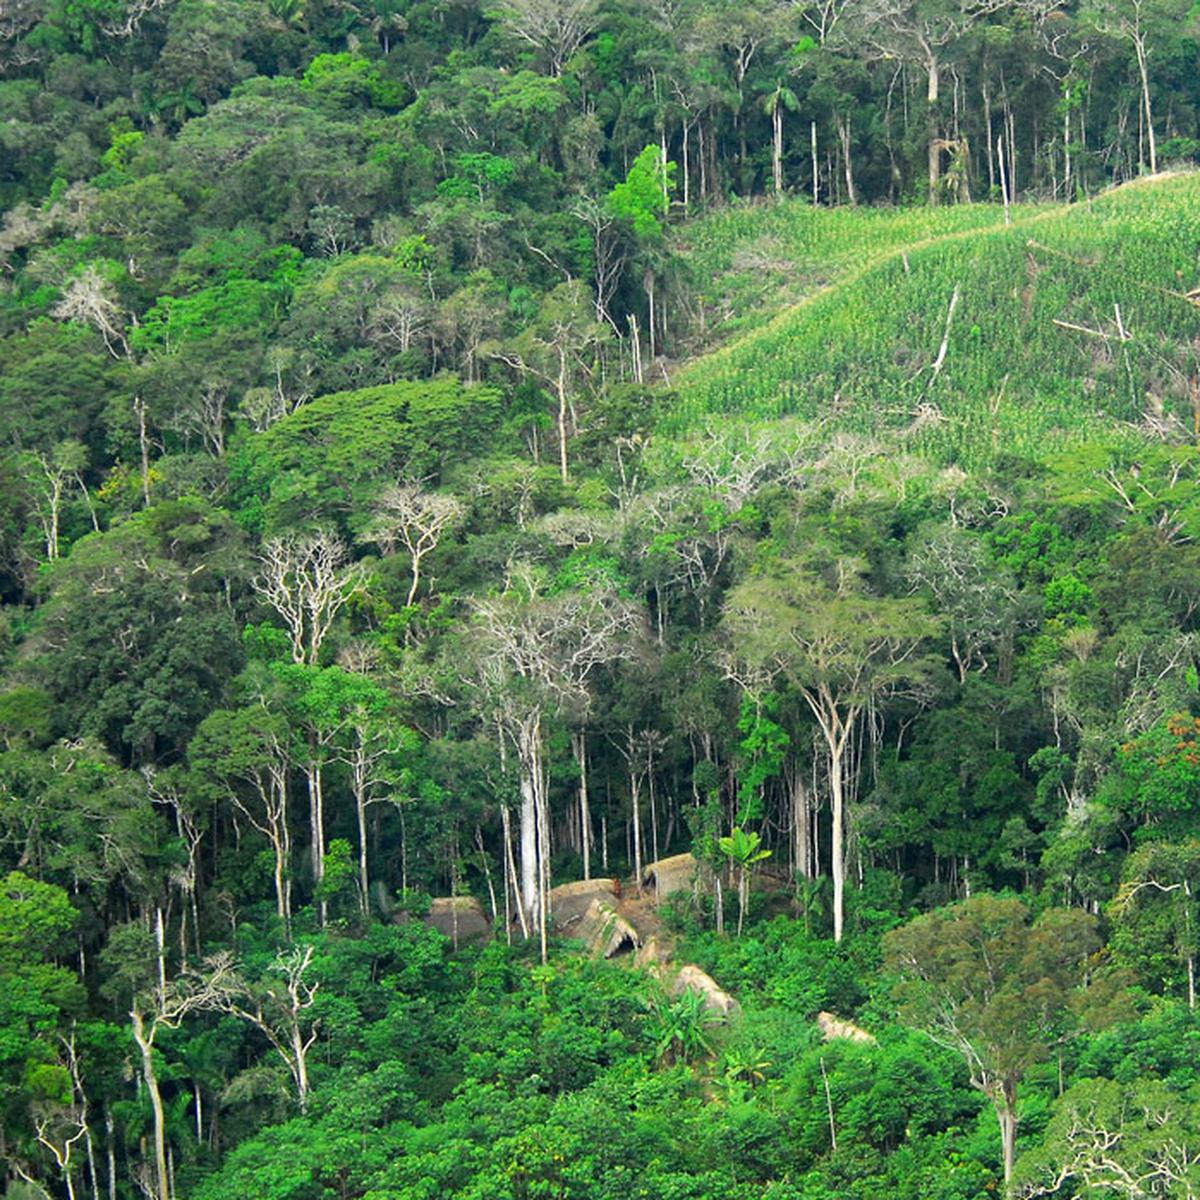 Hutan hujan tropis merupakan salah satu contoh dari wilayah